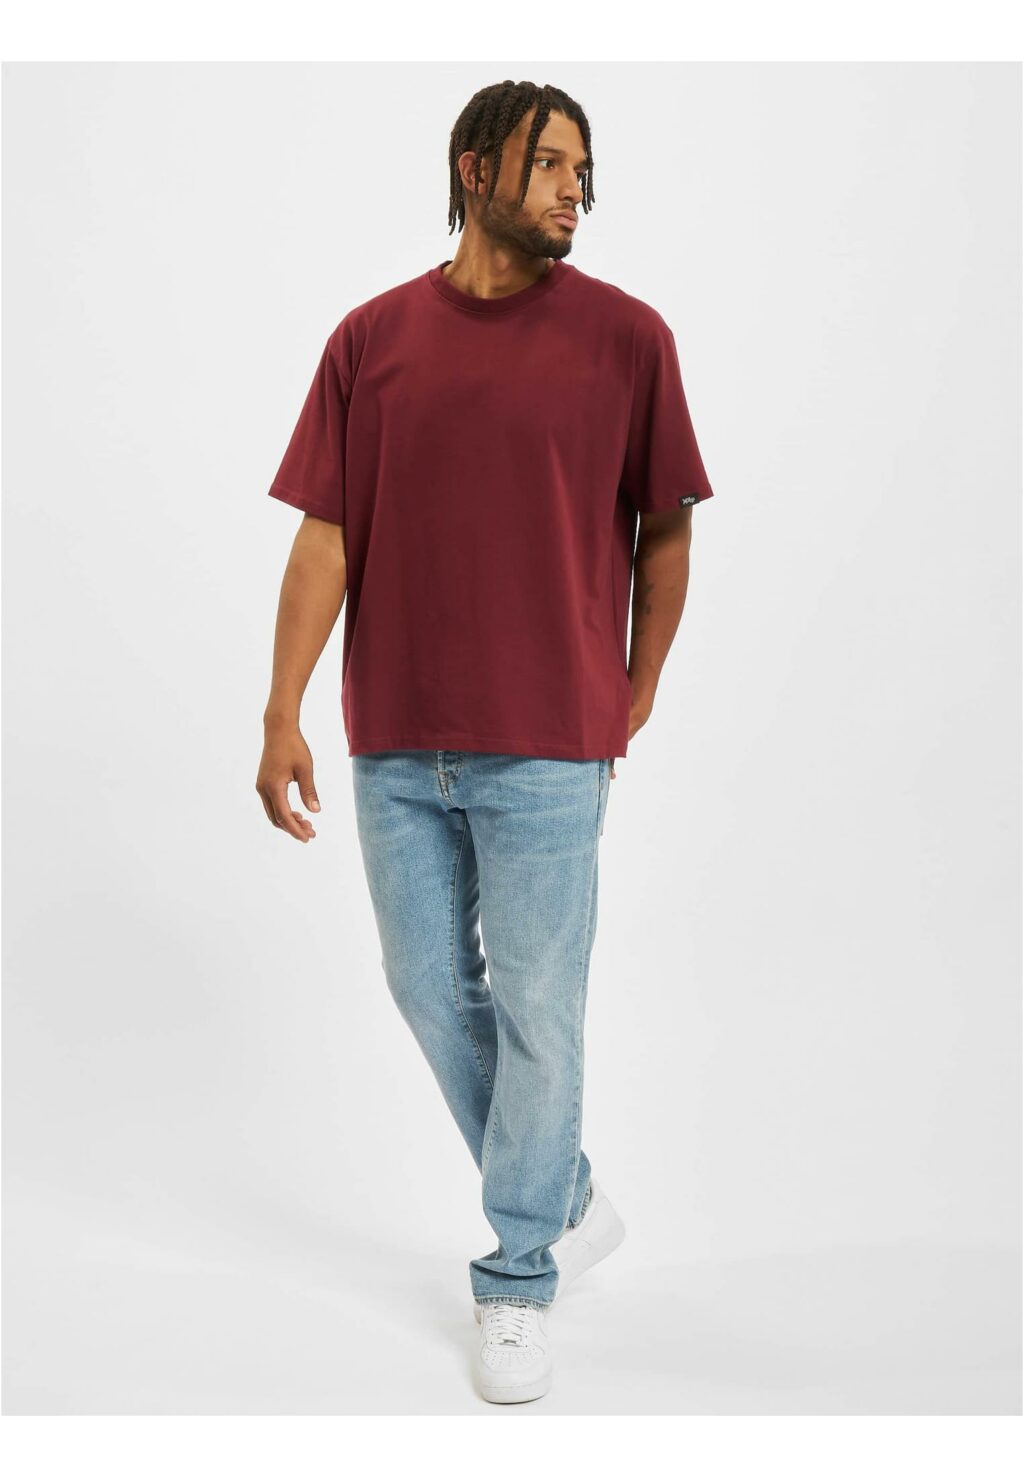 Kizil T-Shirt burgundy JRTS676